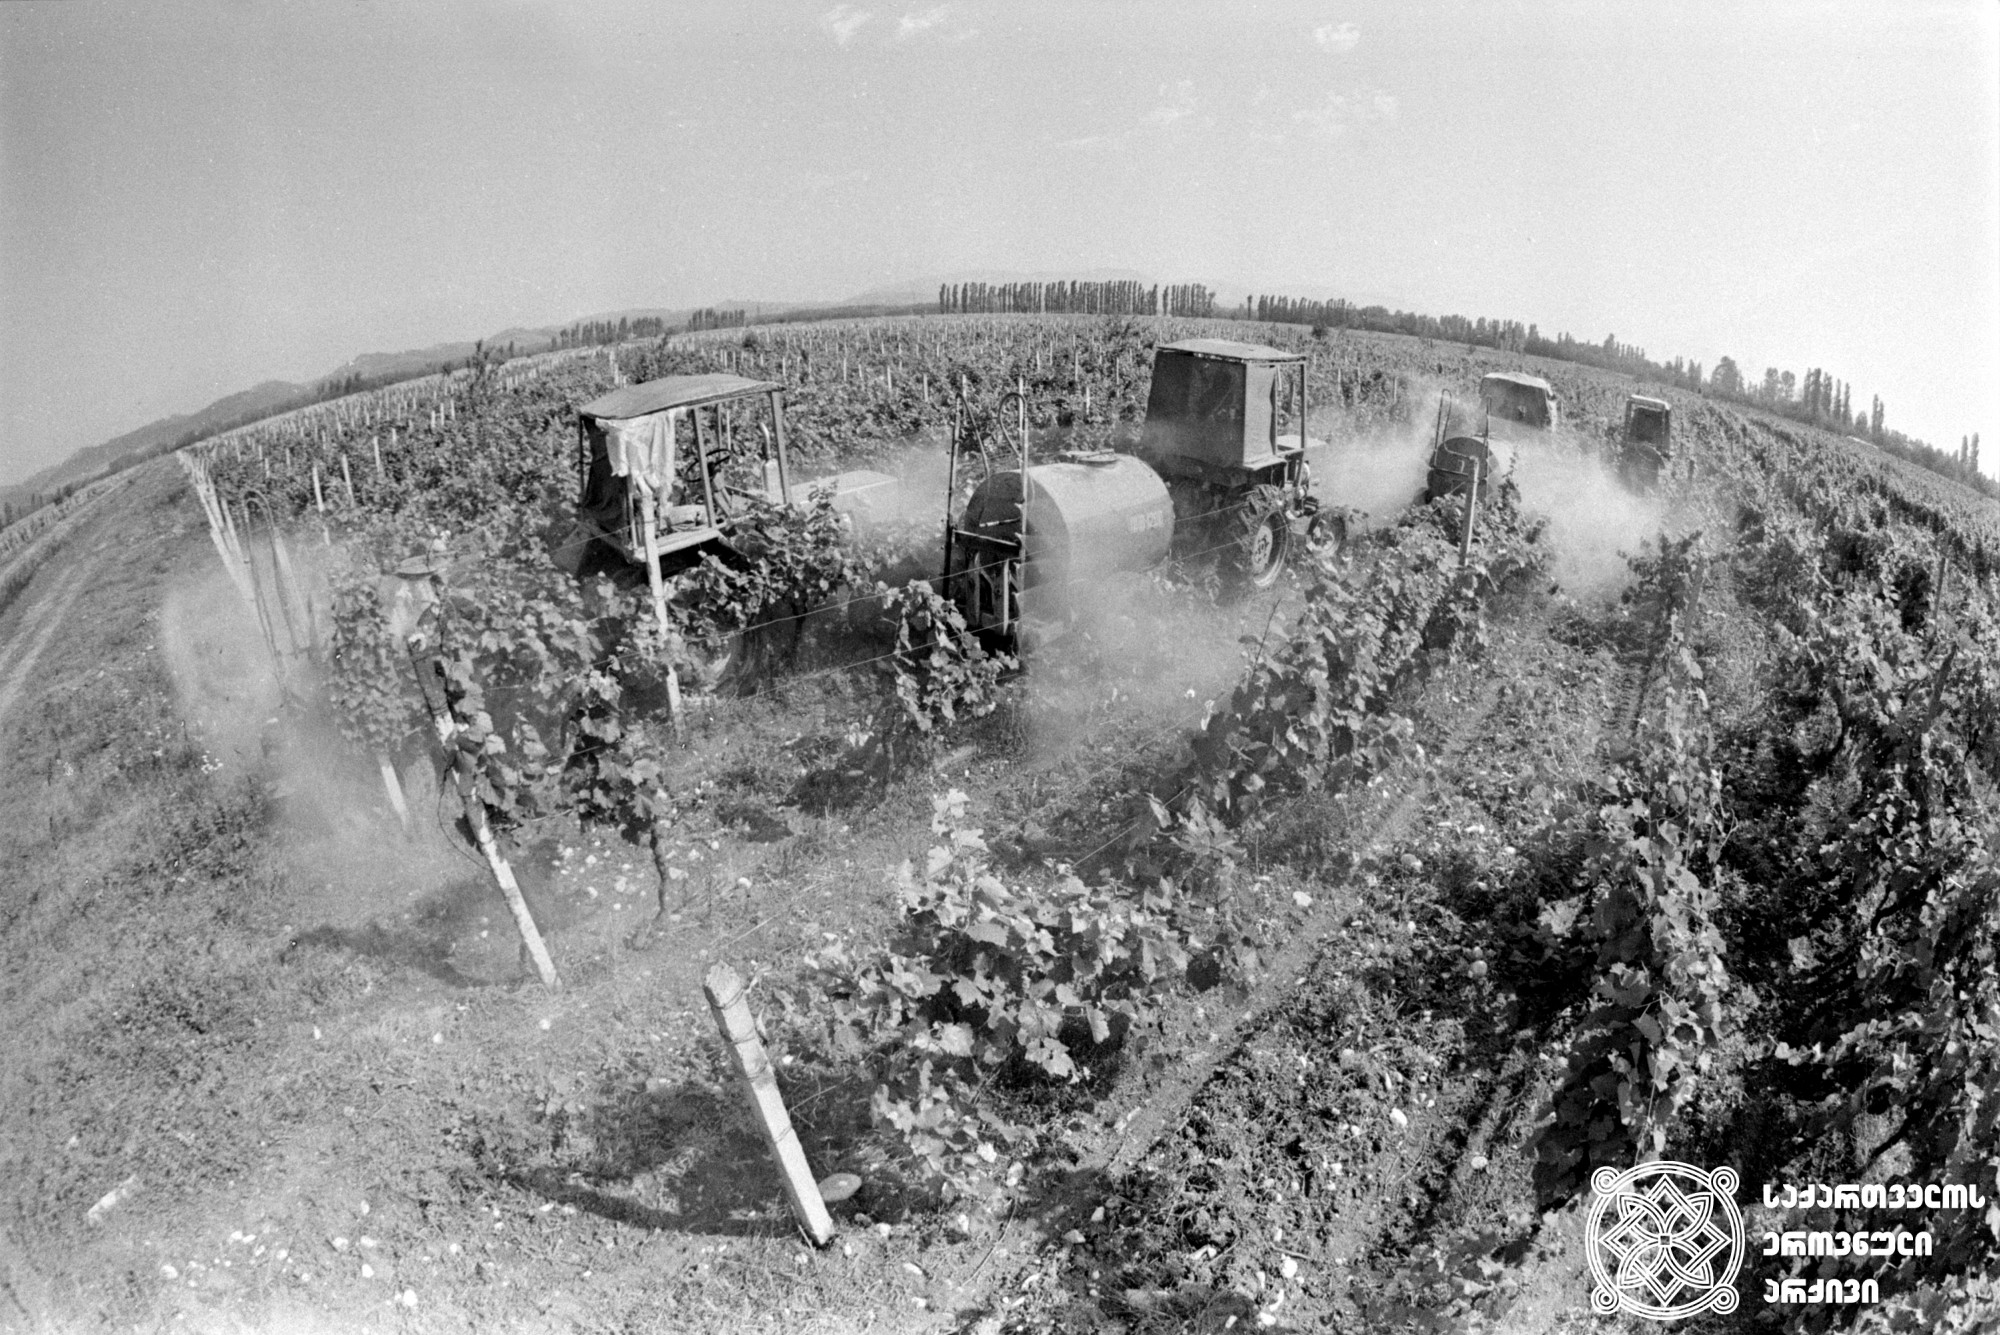 ვაზის დამუშავება <br>
ფოტო: გ. შარაშენიძე <br>
მარტვილი, 1989 წელი  <br>
Vine processing <br>
Photo by G. Sharashenidze <br>
Martvili, 1989